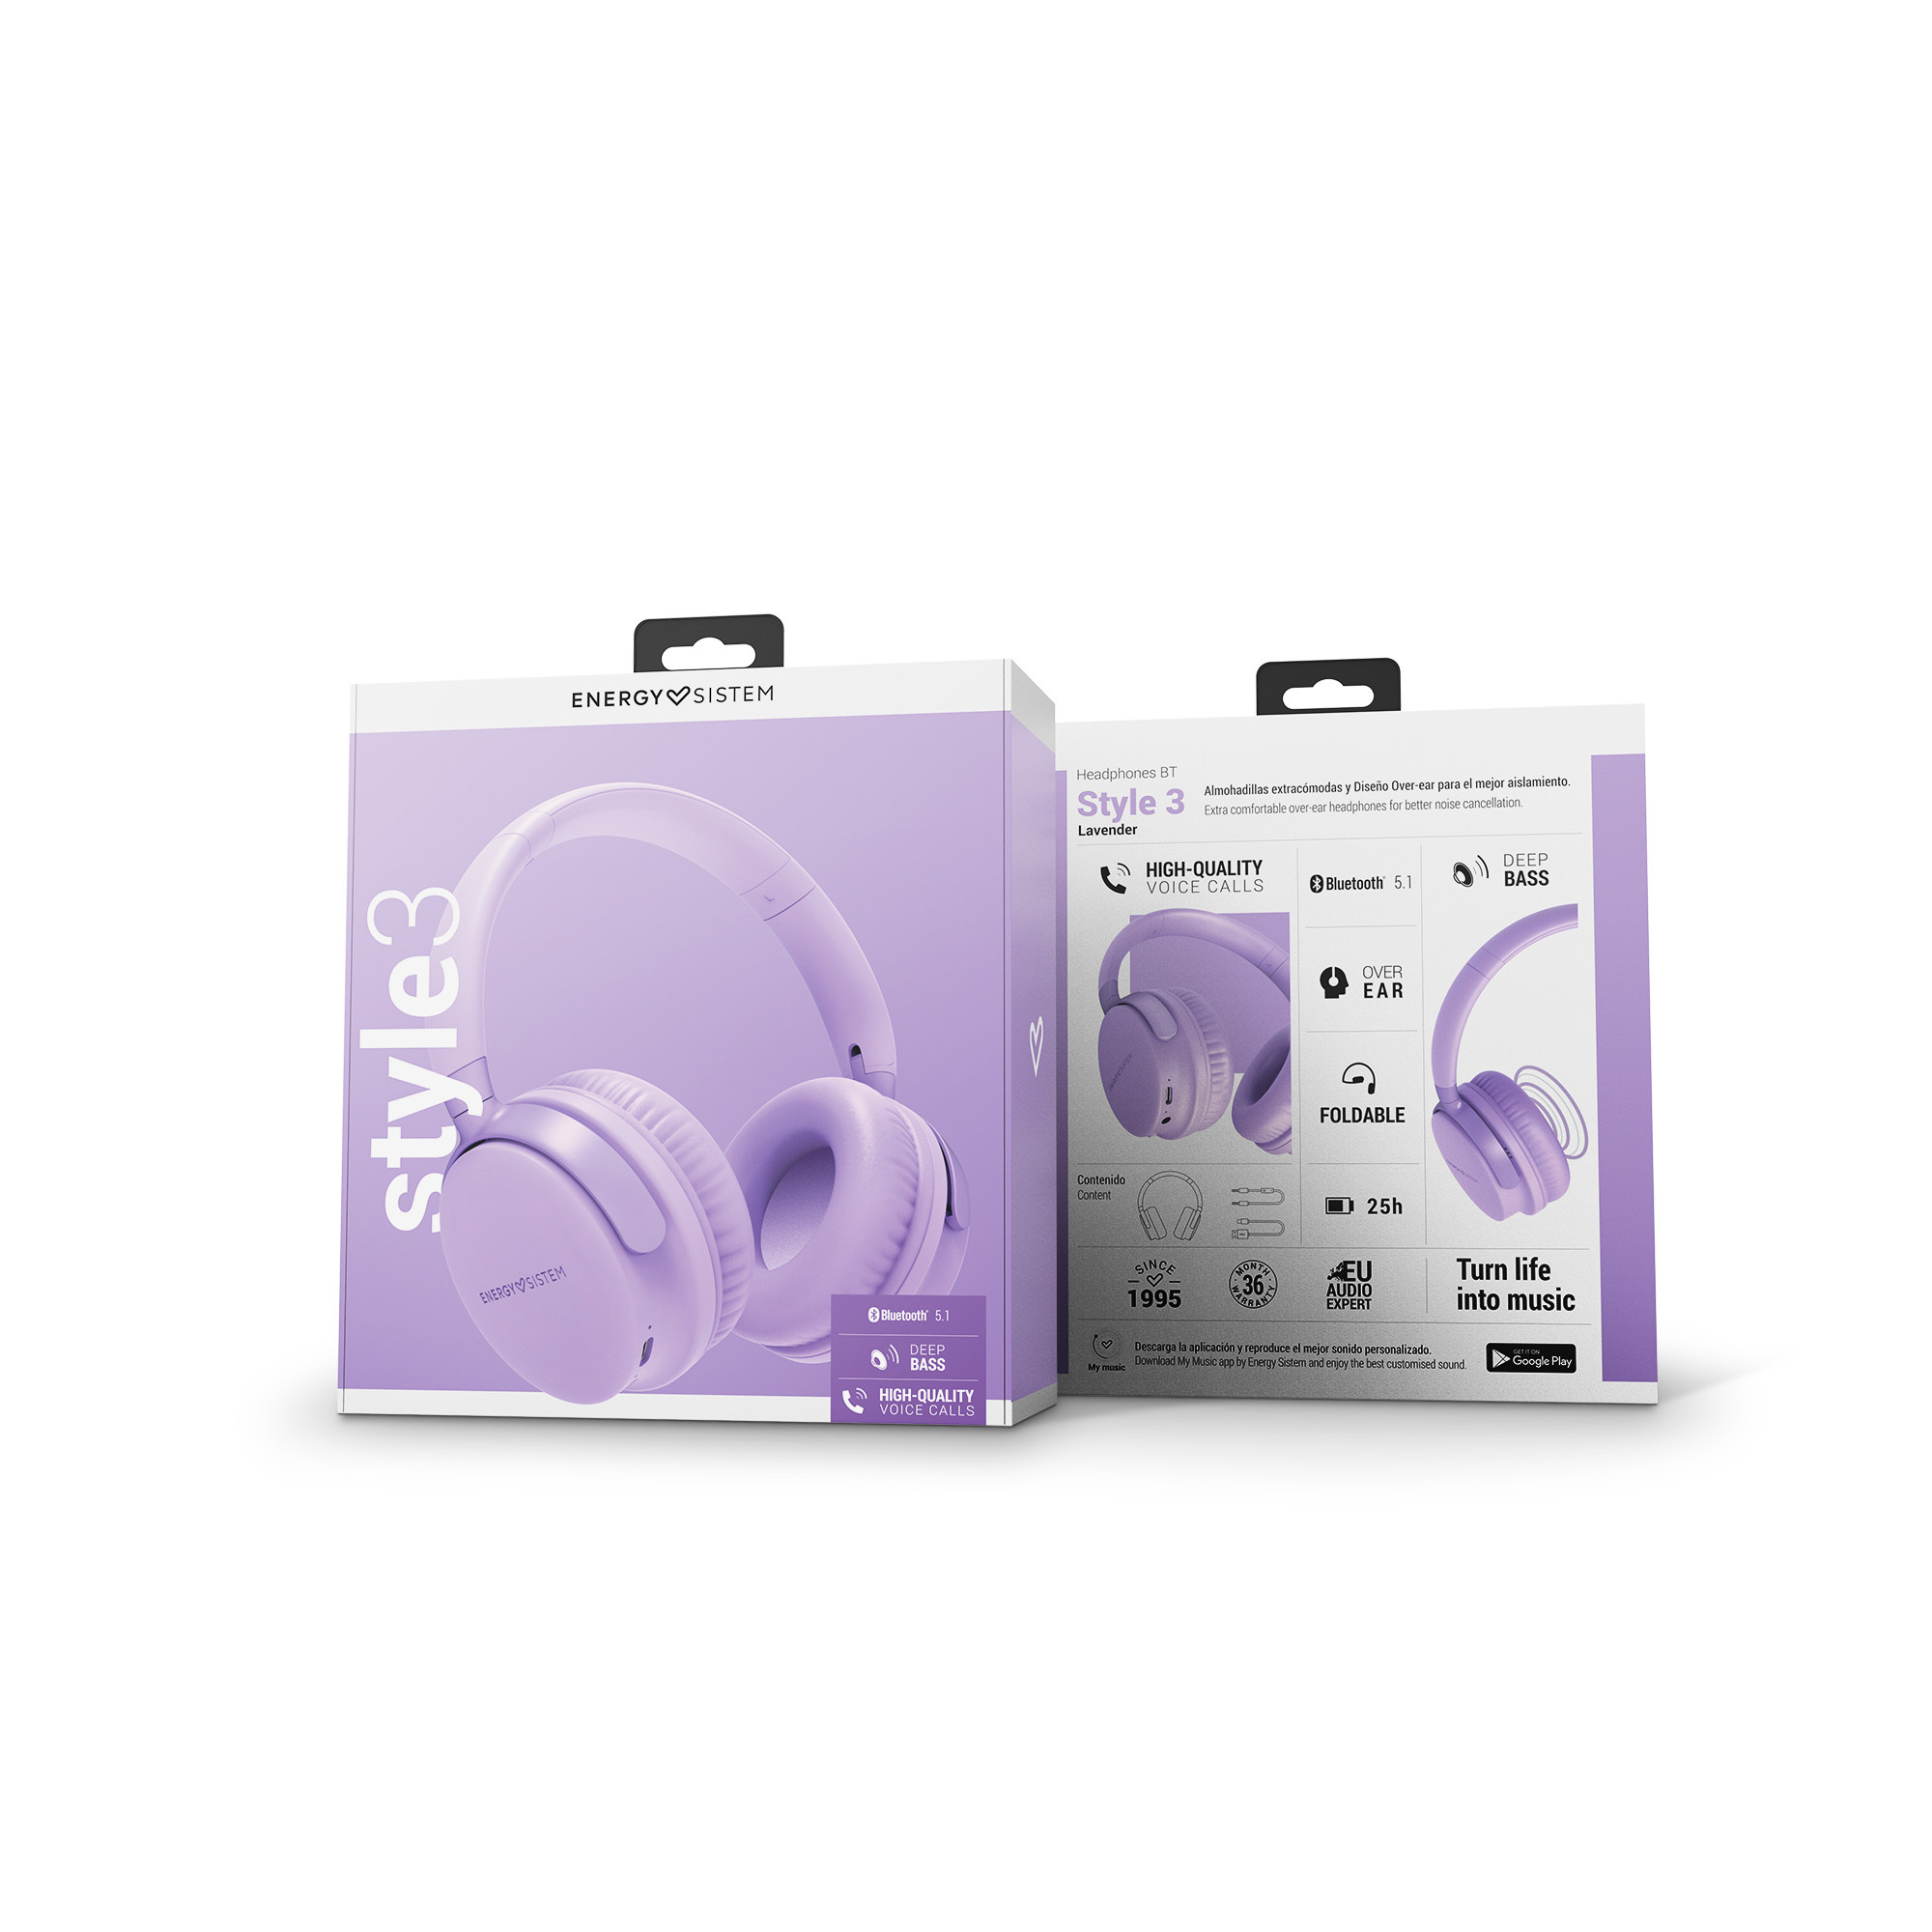 Style 3 Bluetooth headphones' packaging